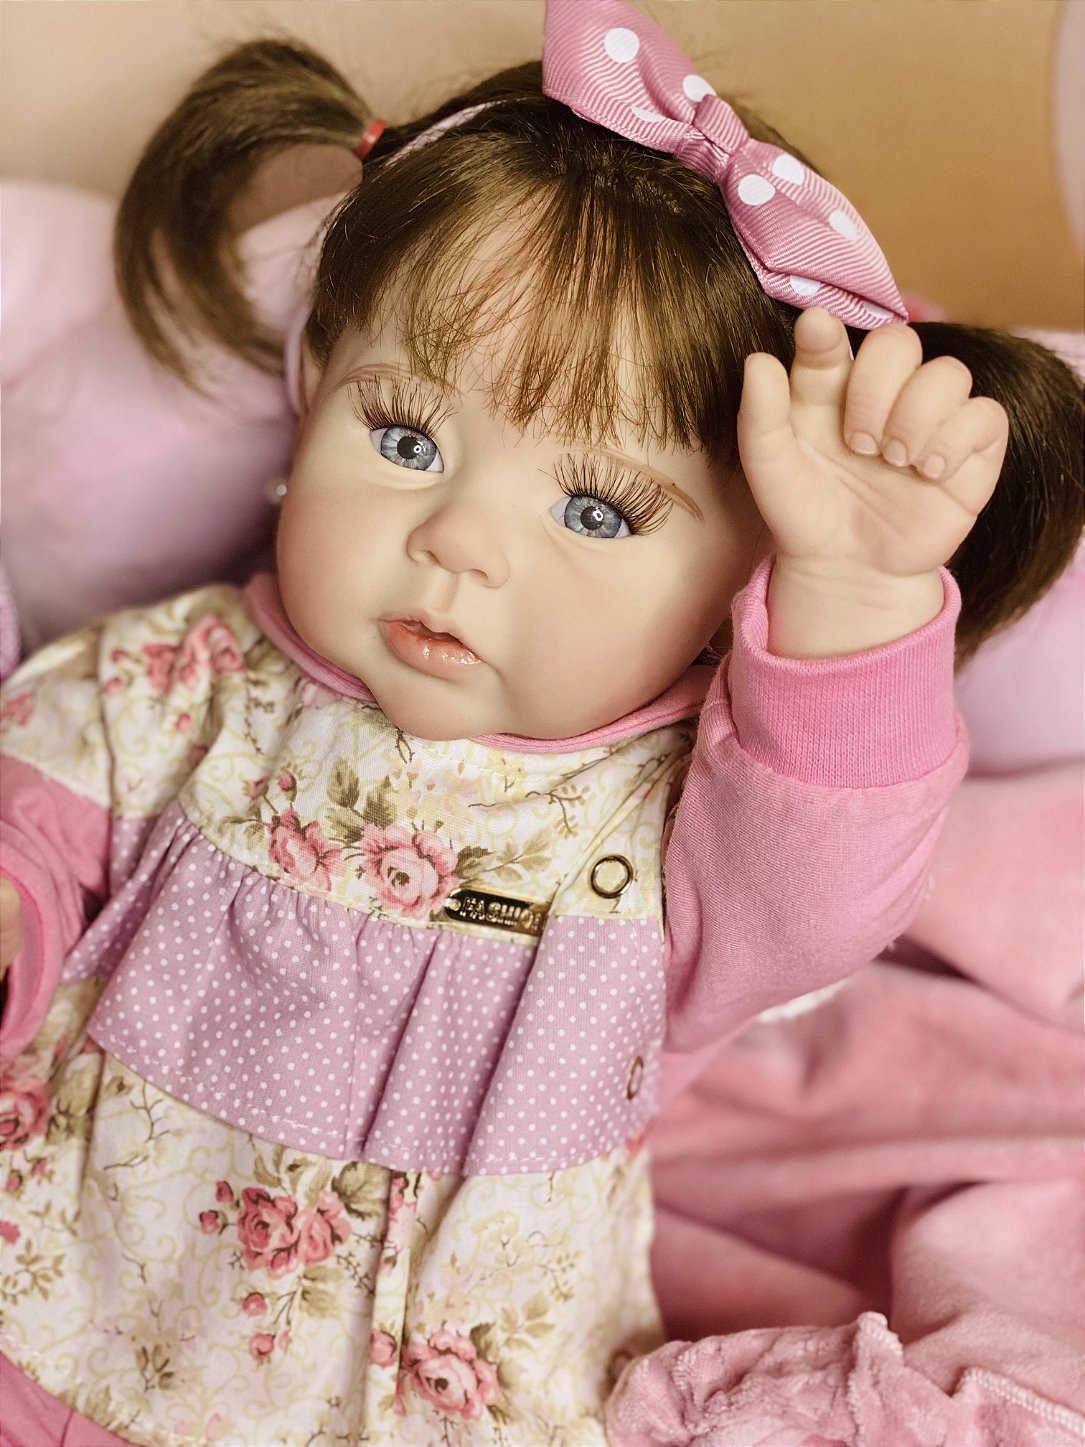 Boneca Bebê Reborn Yasmin com Enxoval - Fantasy baby